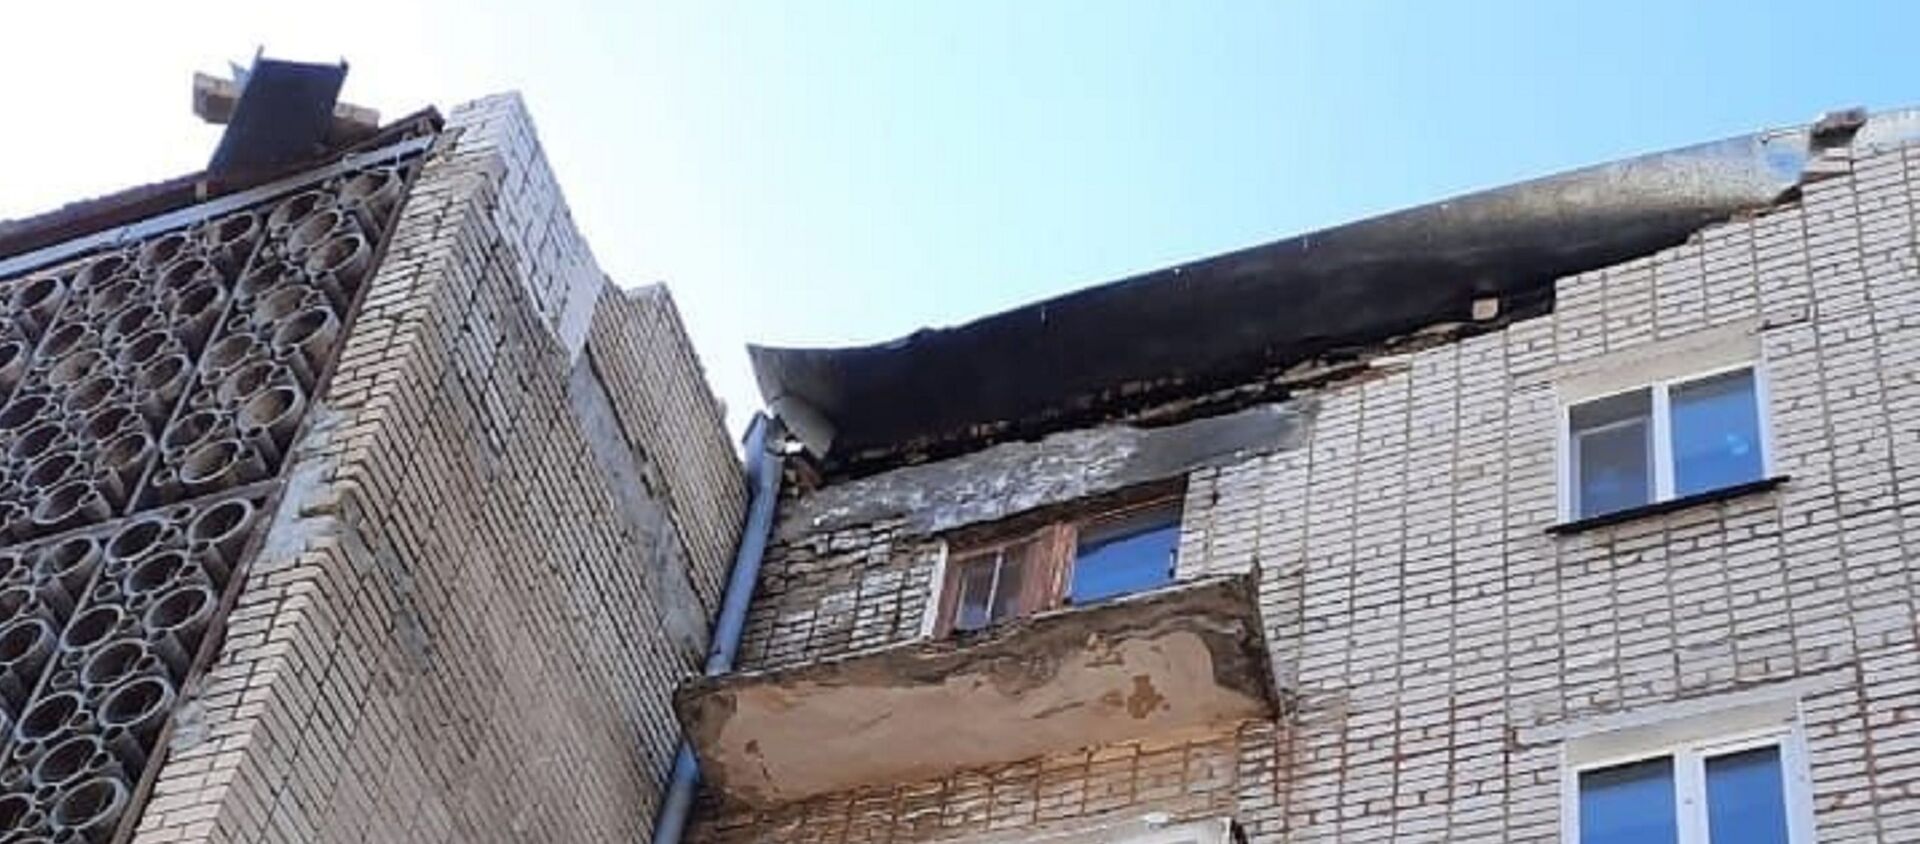 Көкшетауда көпқабатты тұрғын үйдің балконы опырылып түсті - Sputnik Қазақстан, 1920, 14.04.2021